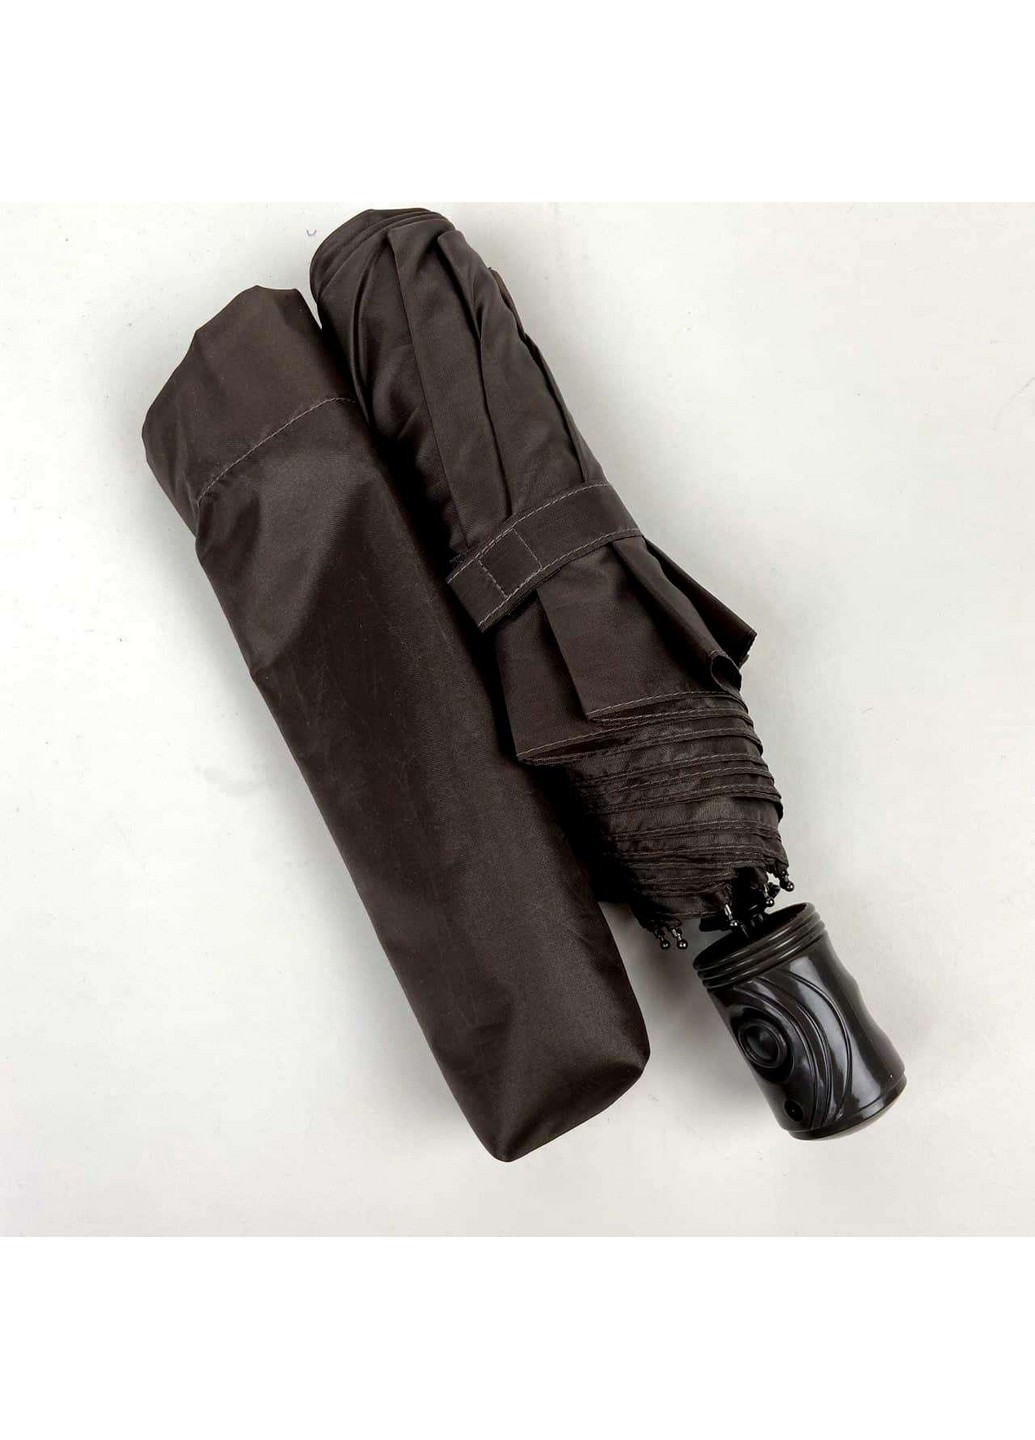 Мужской зонт полуавтомат 98 см SL (258638153)